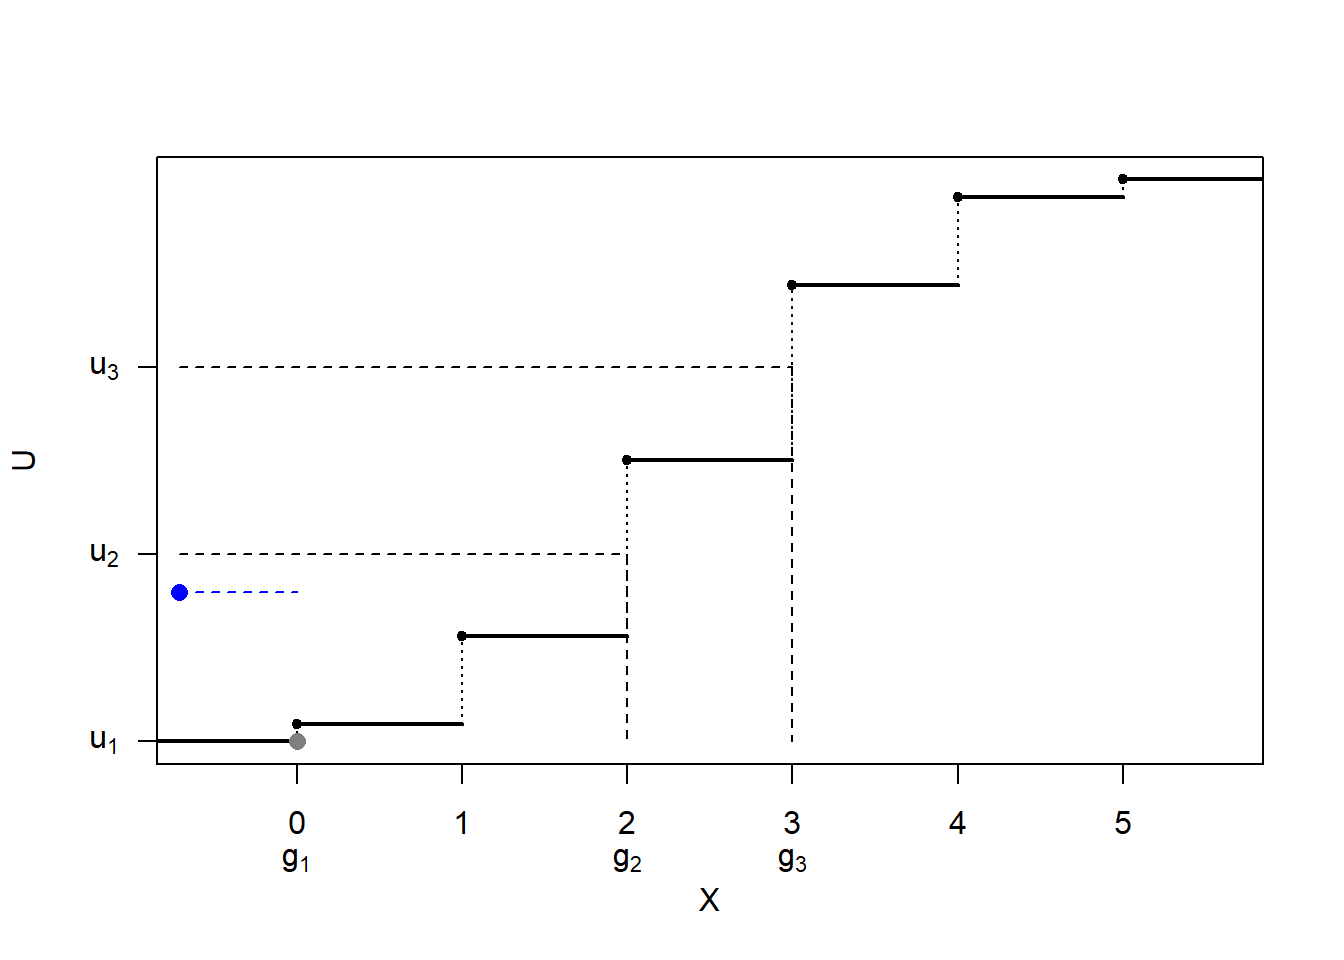 Ilustración de la simulación de una distribución discreta mediante tabla guía.